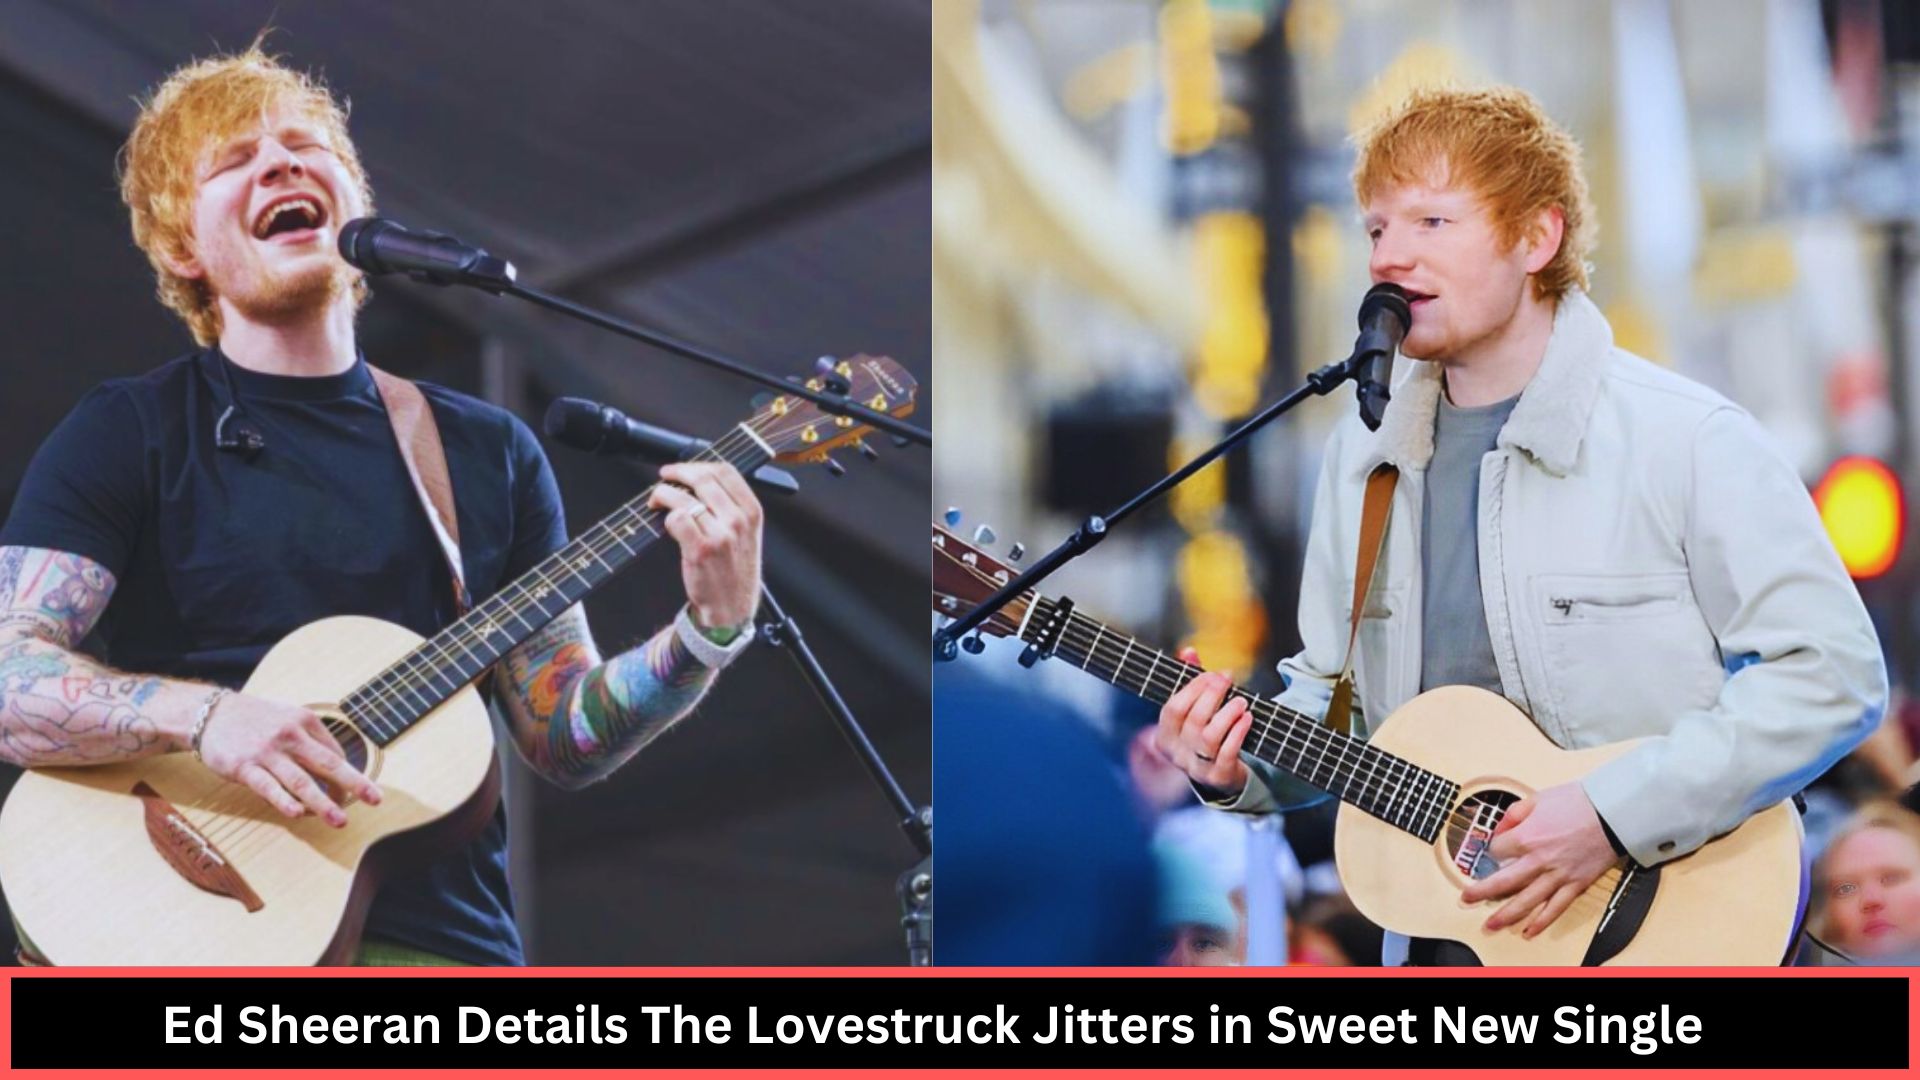 Ed Sheeran Details The Lovestruck Jitters in Sweet New Single